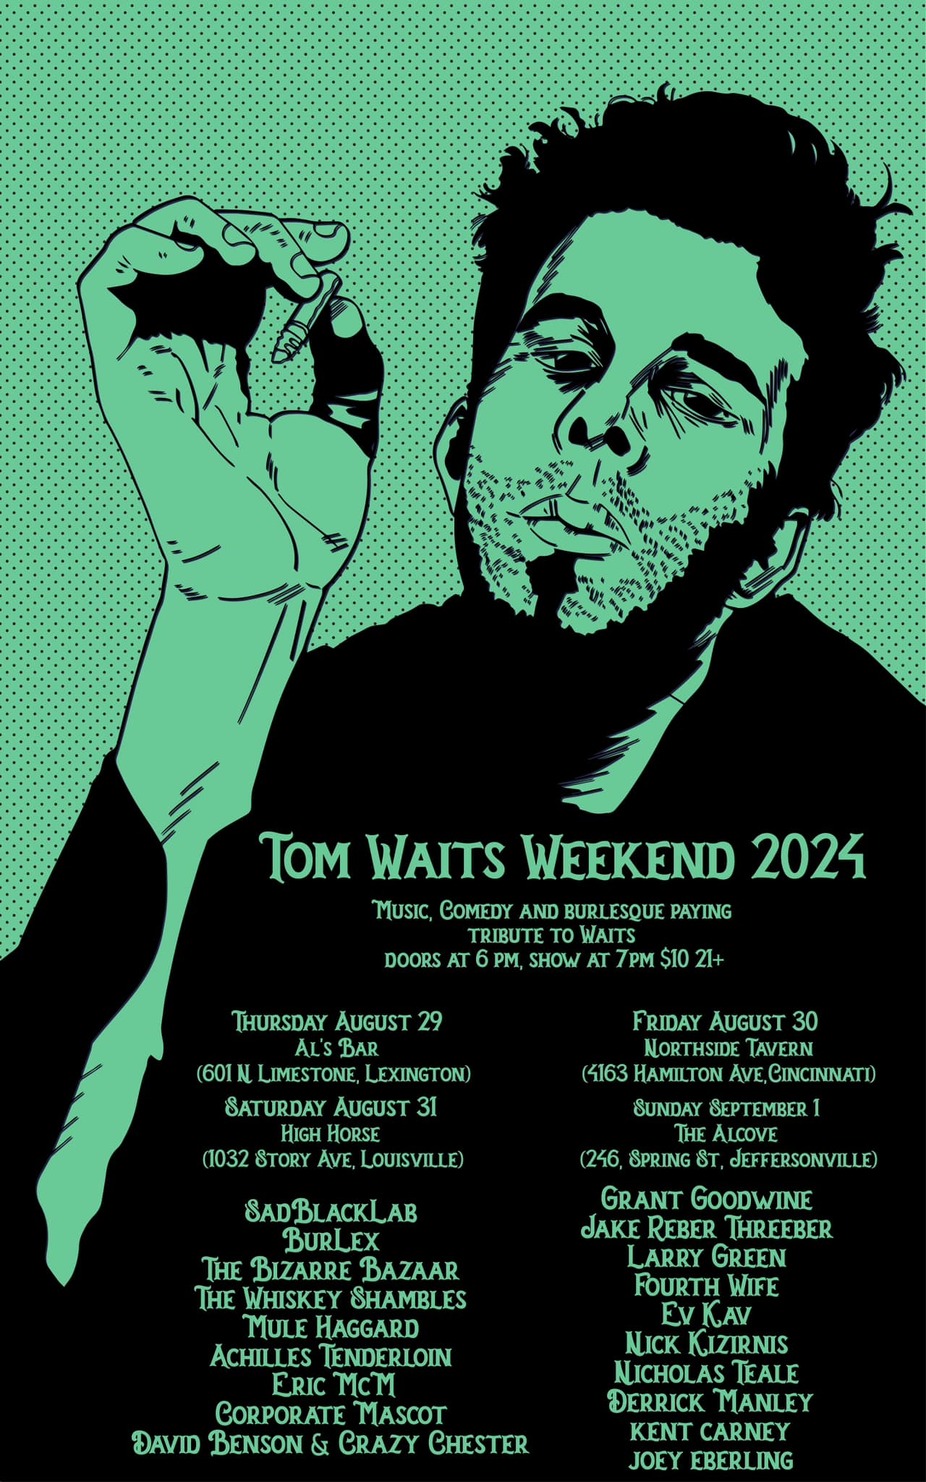 Tom Waits Weekend 2024 event photo